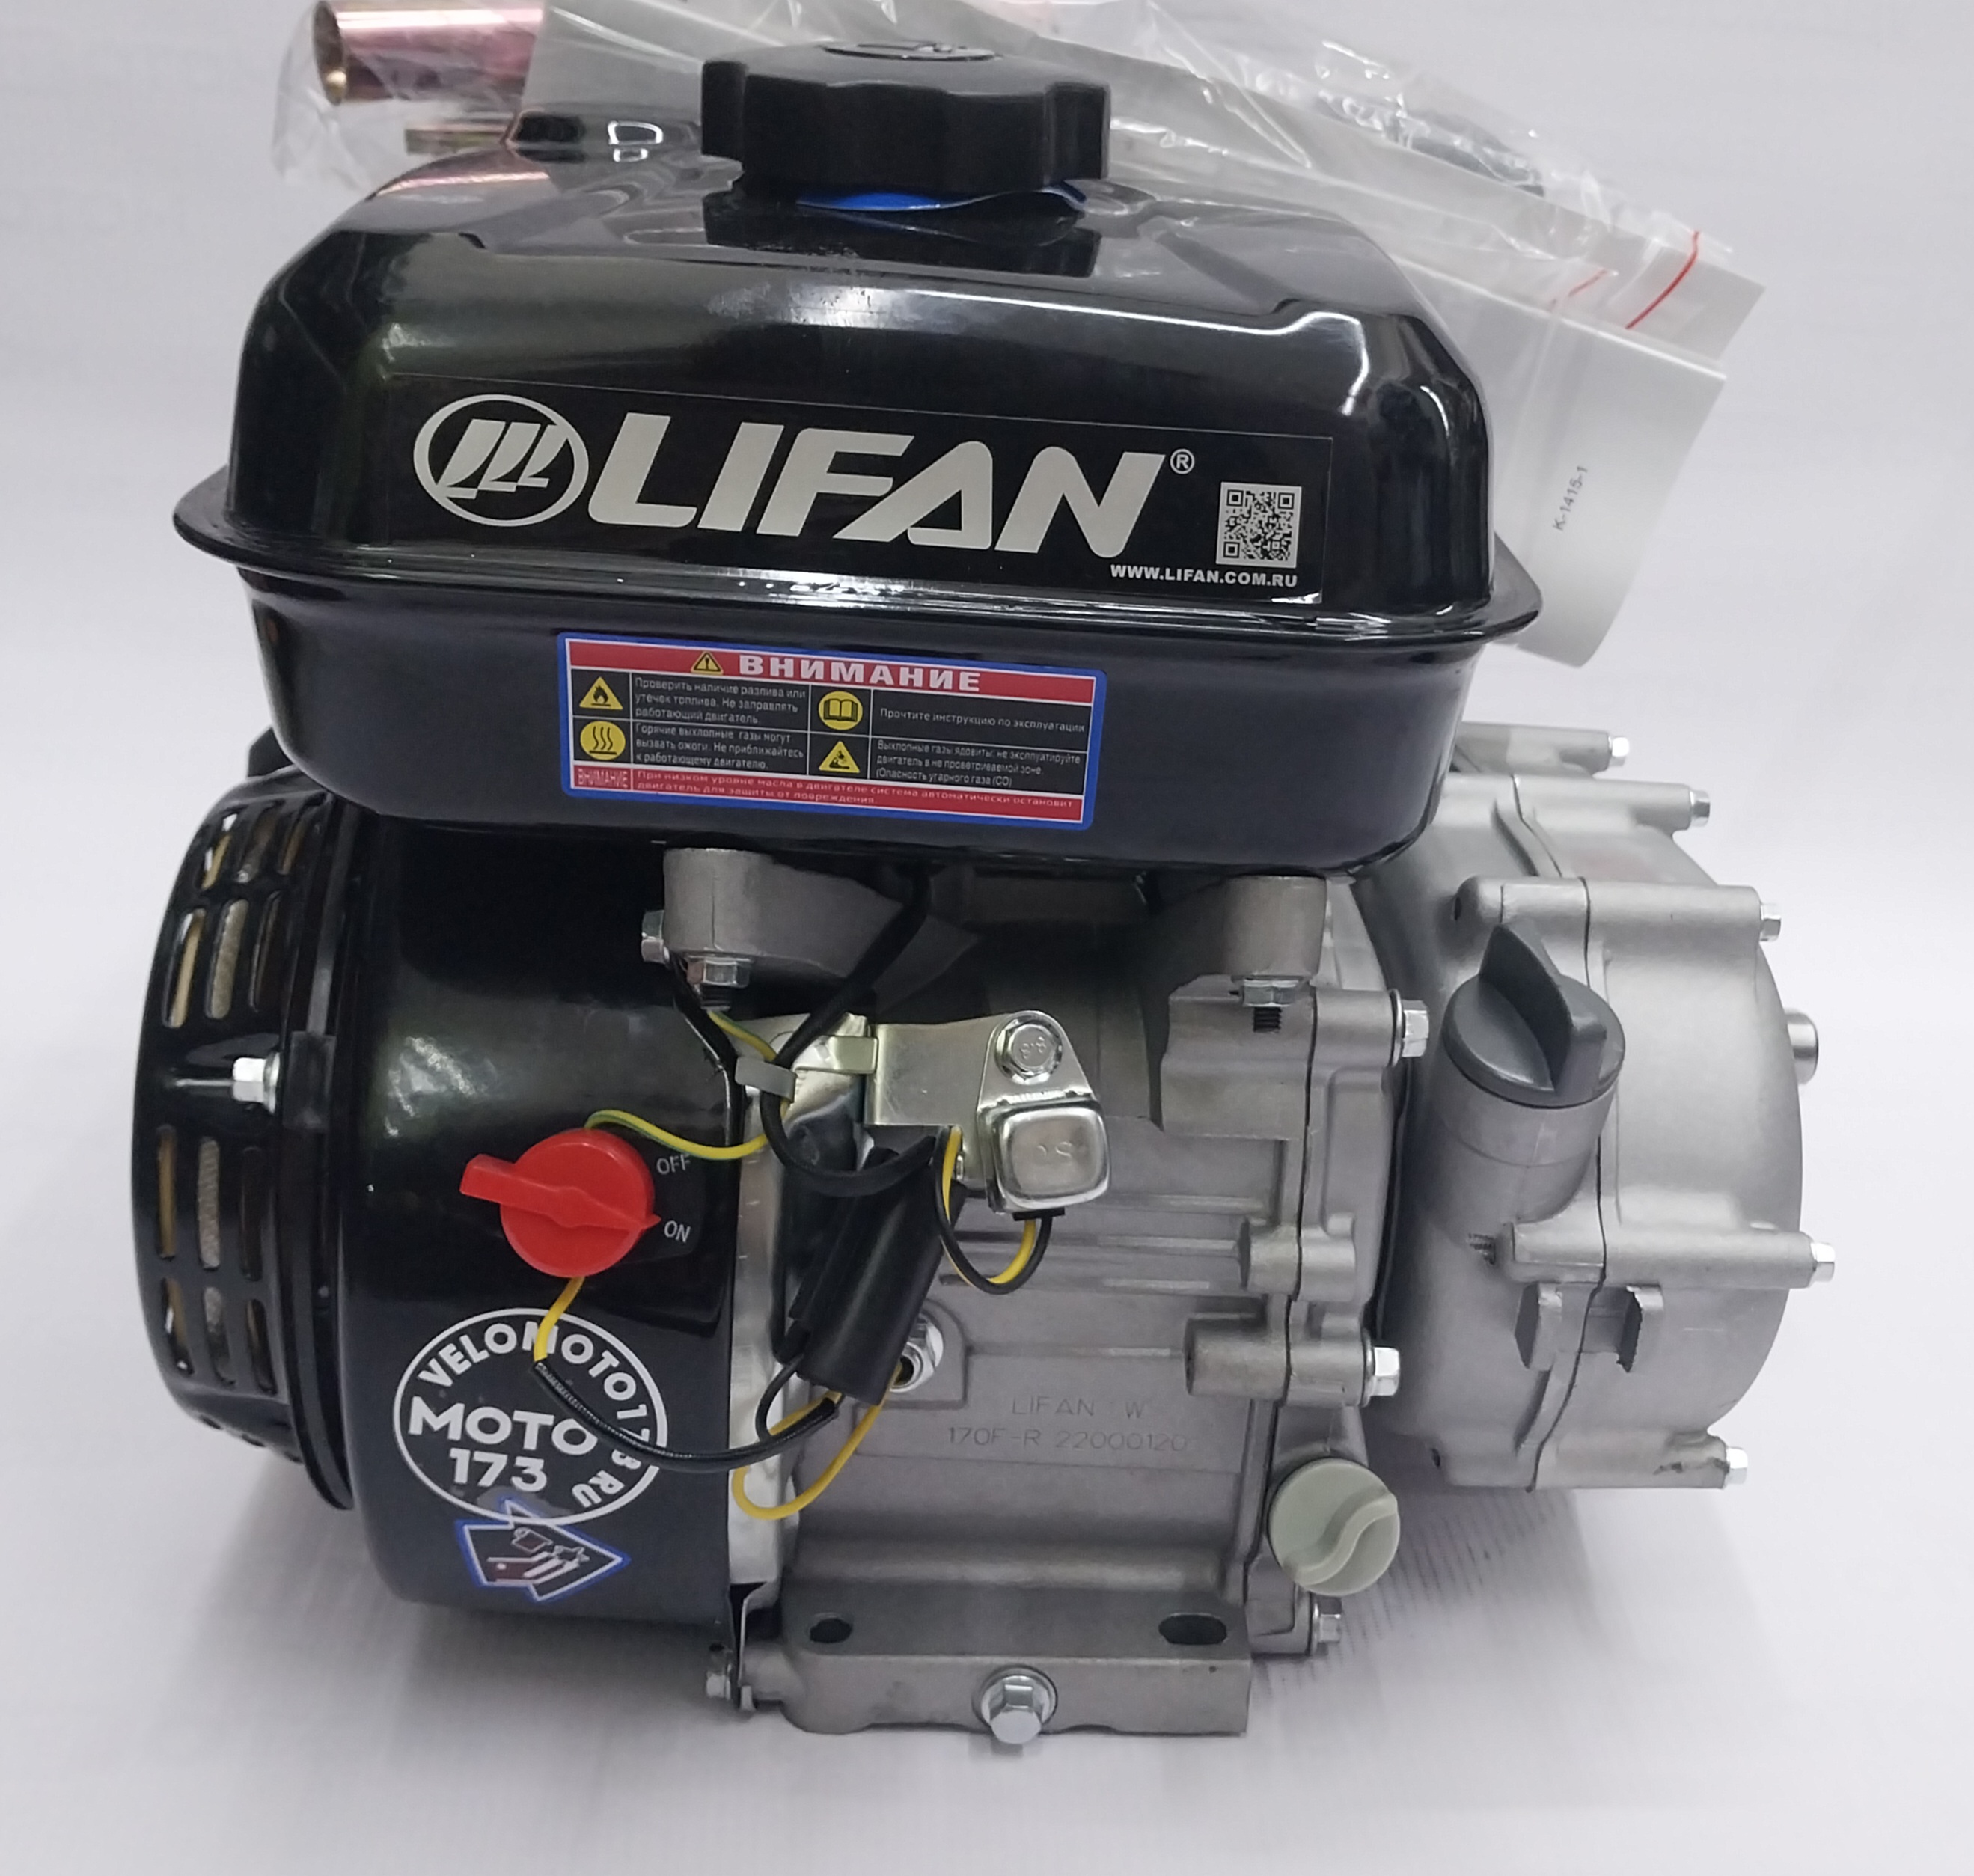 Двигатель LIFAN  7 л.с. 170F-R с автоматическим сцеплением и понижающим редуктором 2:1, вал D20